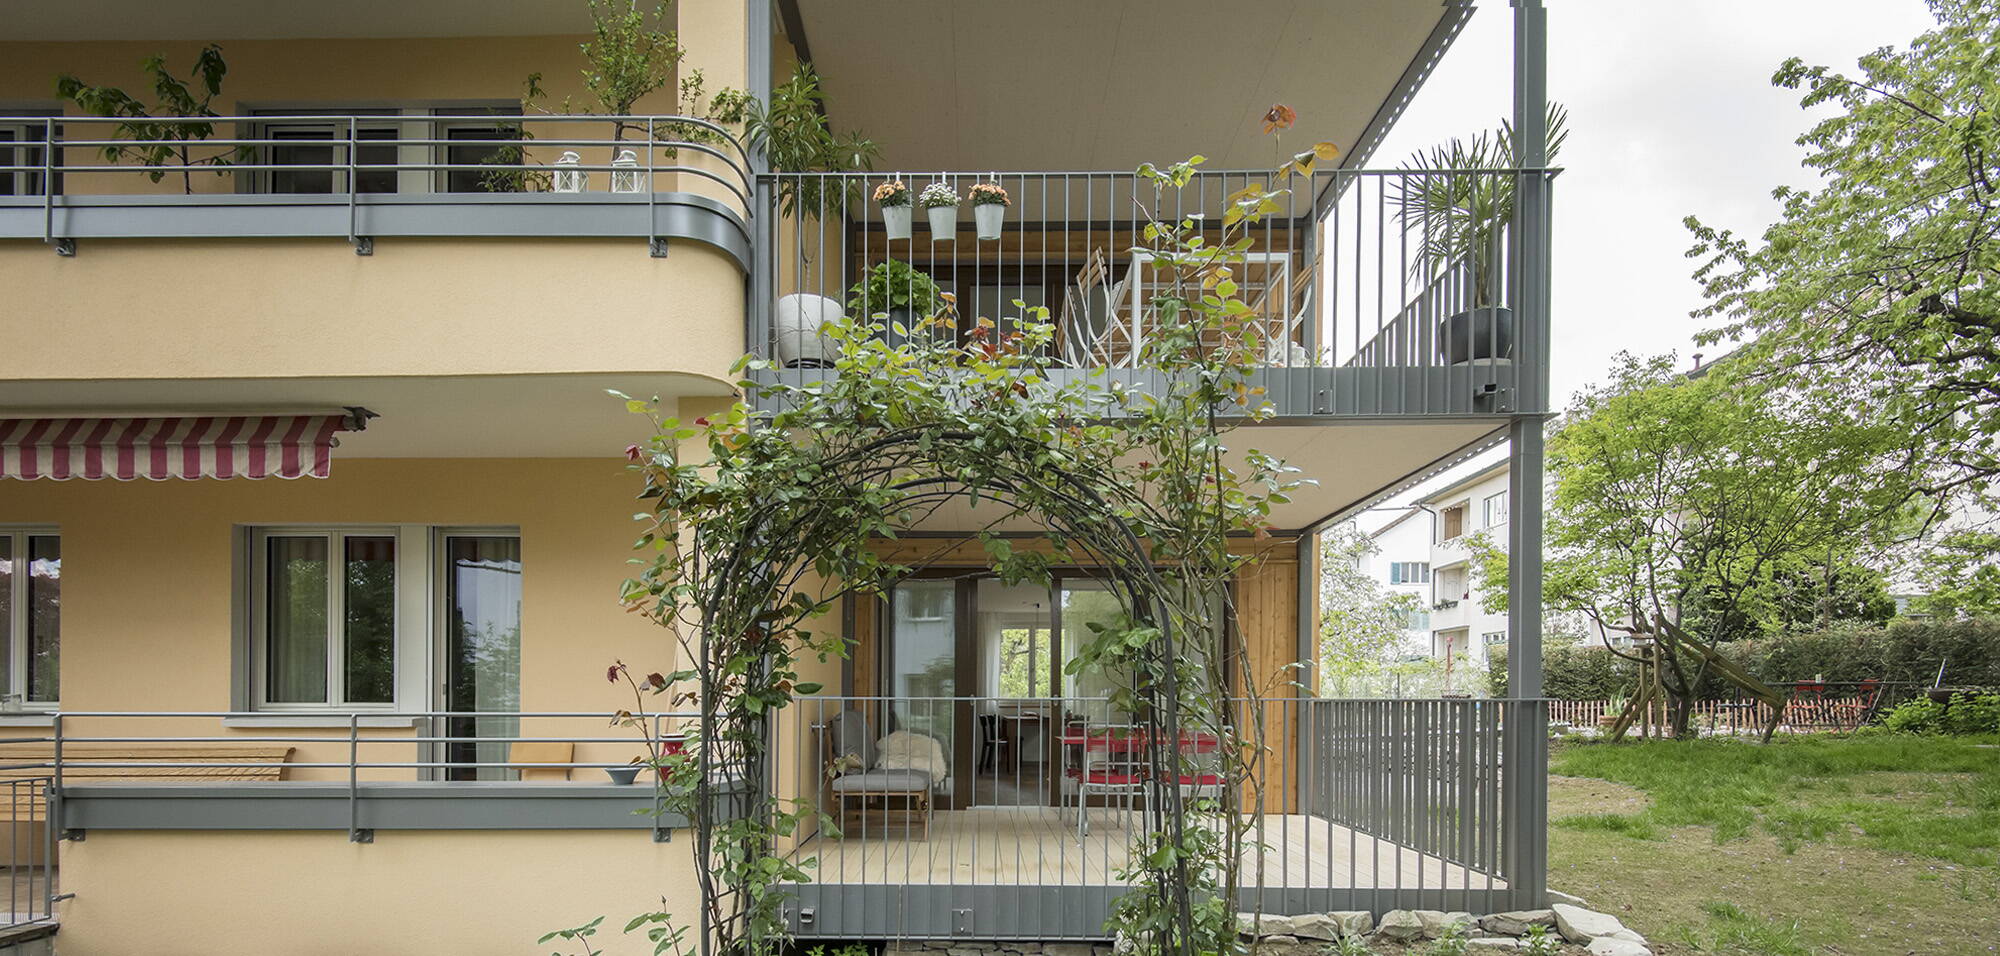 Zoom: Altbauweise Zentralschweiz_Wohnhaus Luzern_Anbau mit Balkone